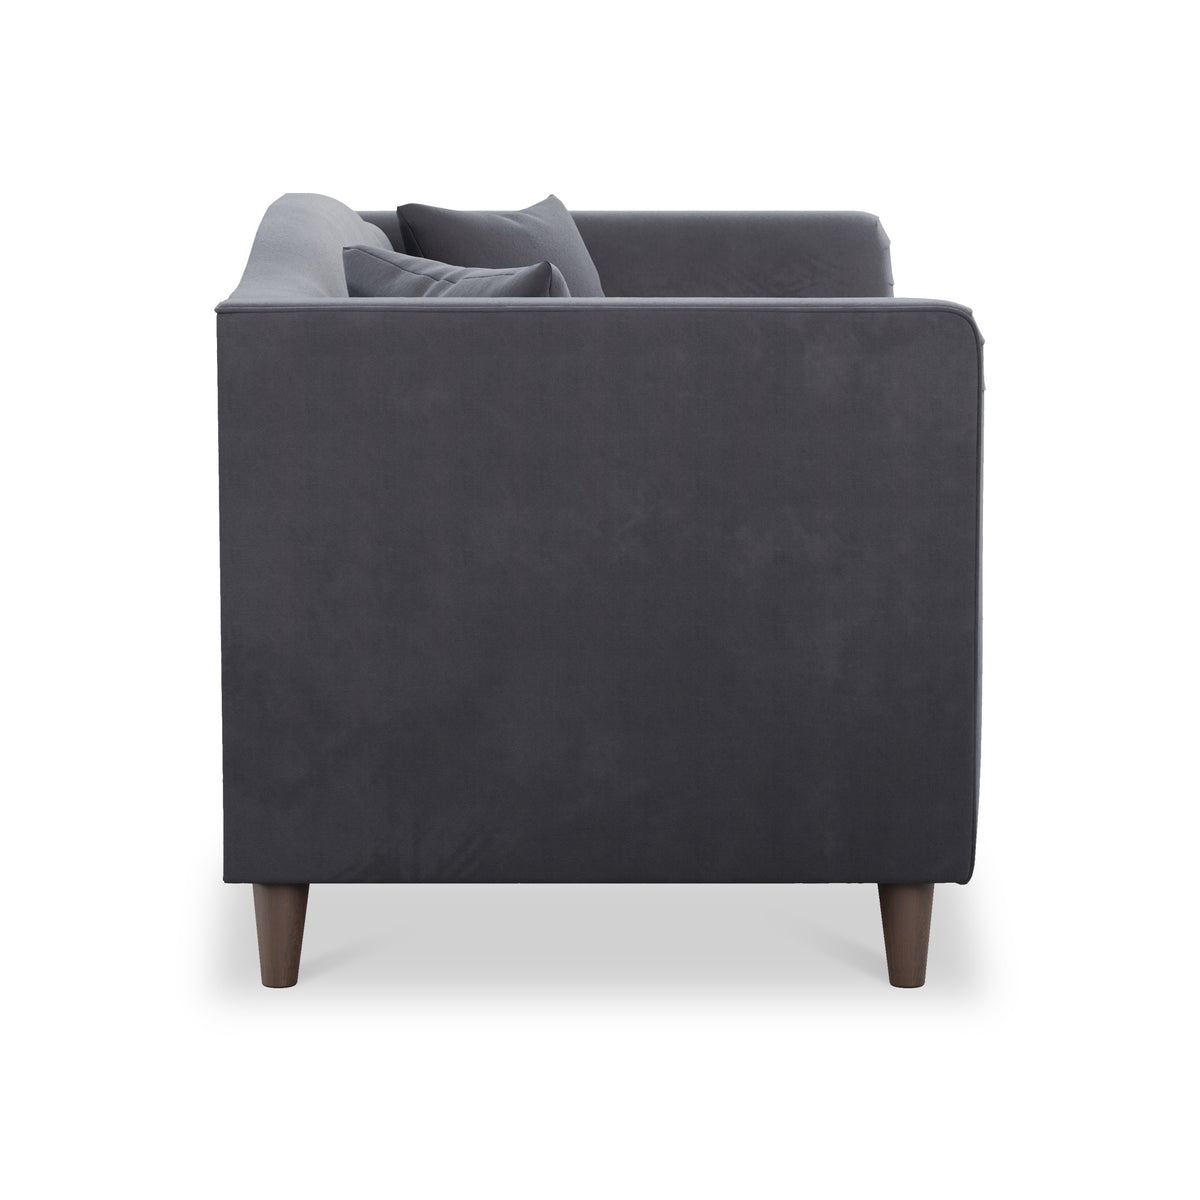 Pippa Steel Grey Plush Velvet 2 Seater Sofa from Roseland Furniture